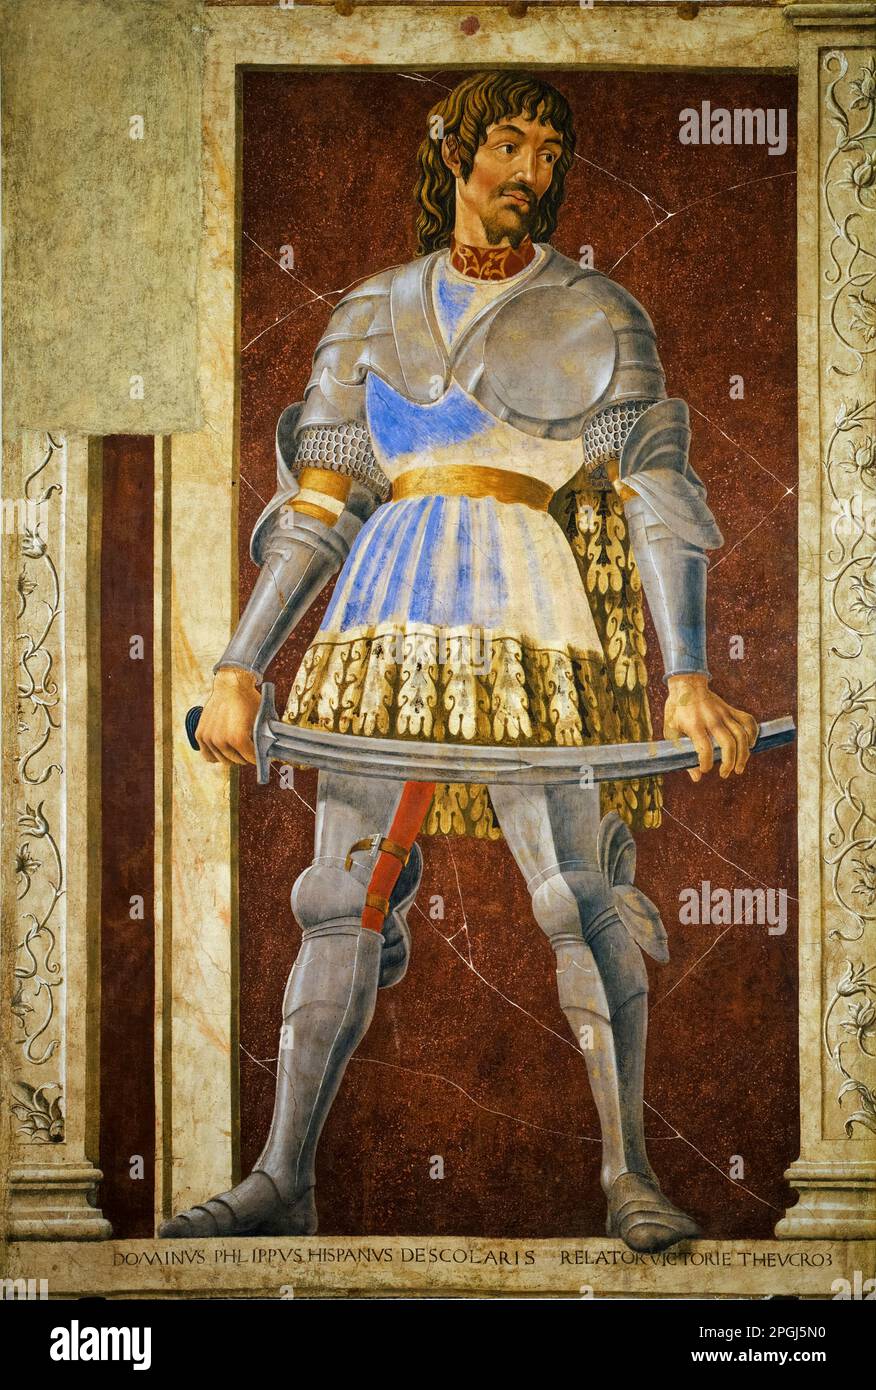 Filippo Scolari (1369-1426), detto Pippo Spano di Ispàn, leader fiorentino al servizio dell'Ungheria, dipinto a tempera su tavola di Andrea del Castagno, circa 1450 Foto Stock